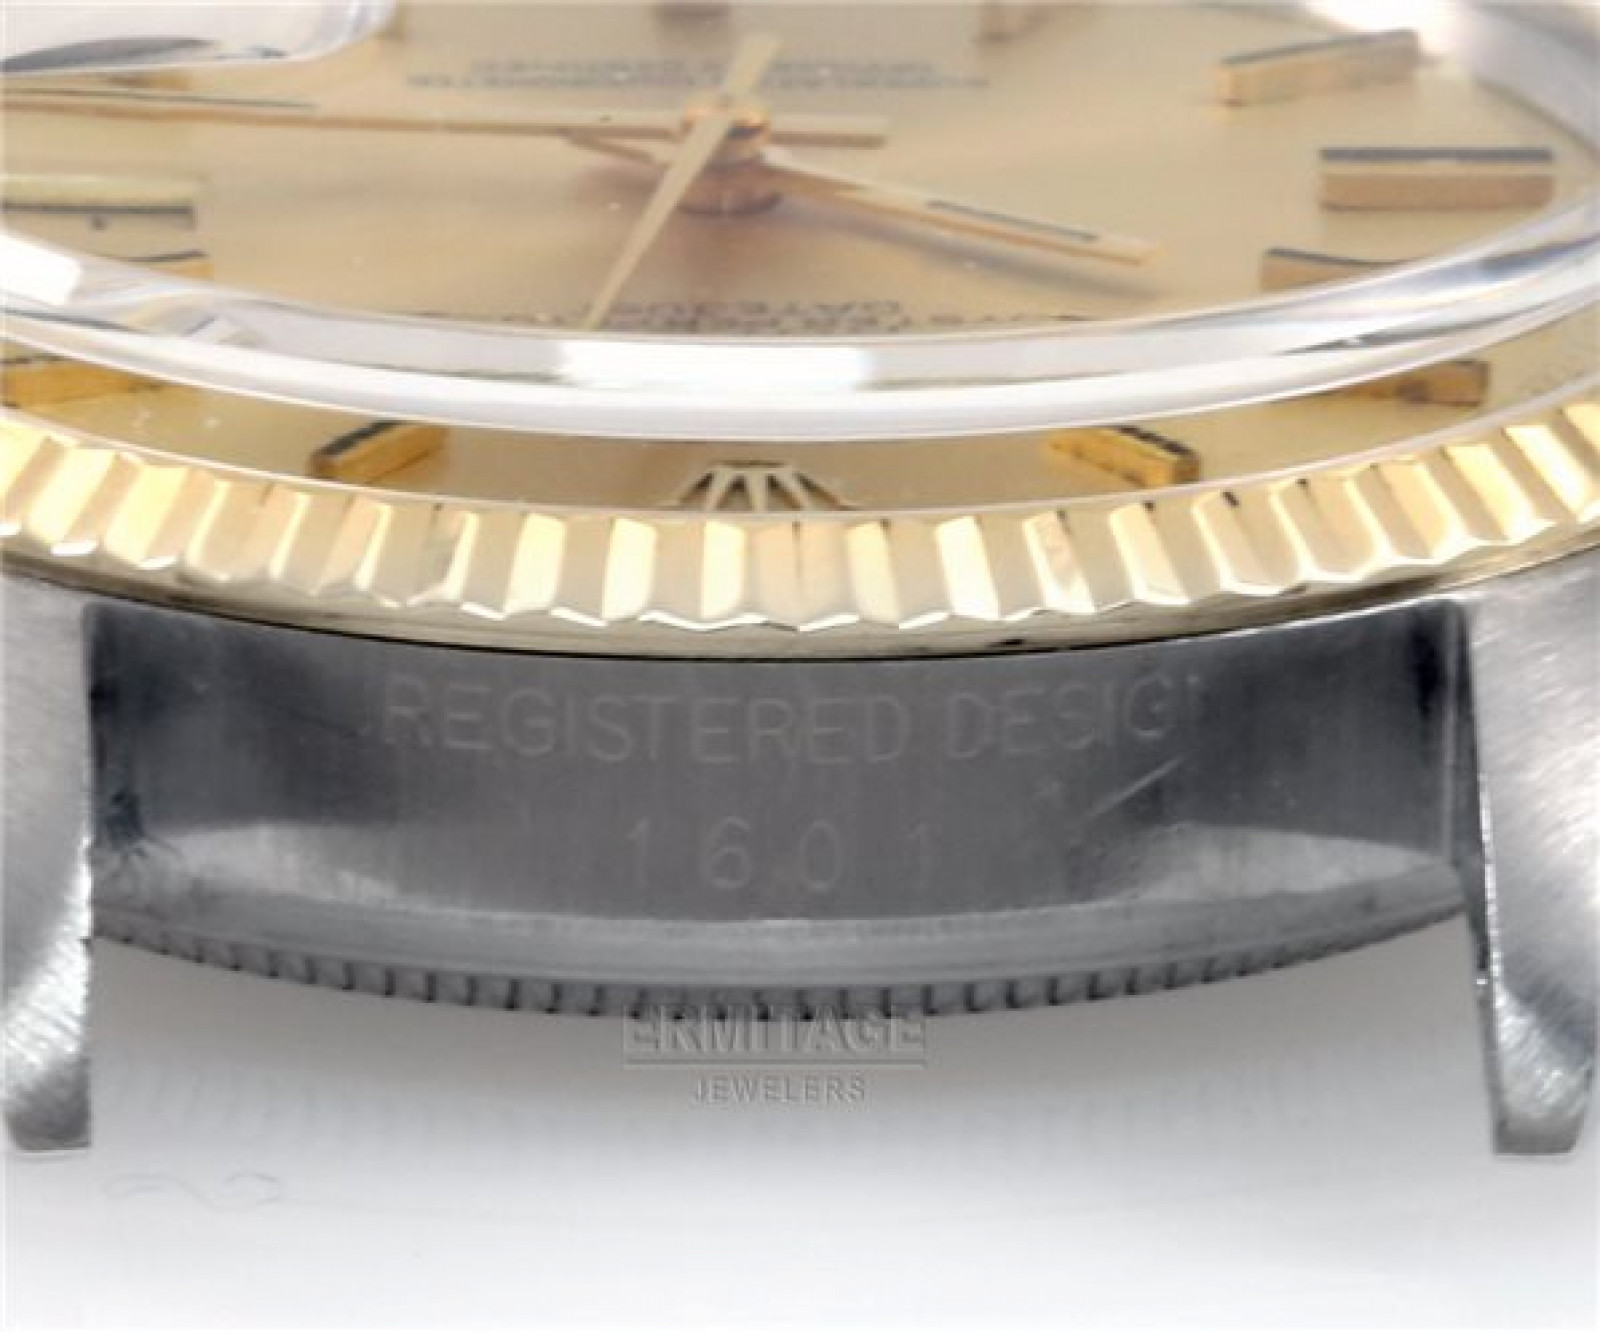 Vintage Rare Rolex Datejust 1601 Gold Year 1971